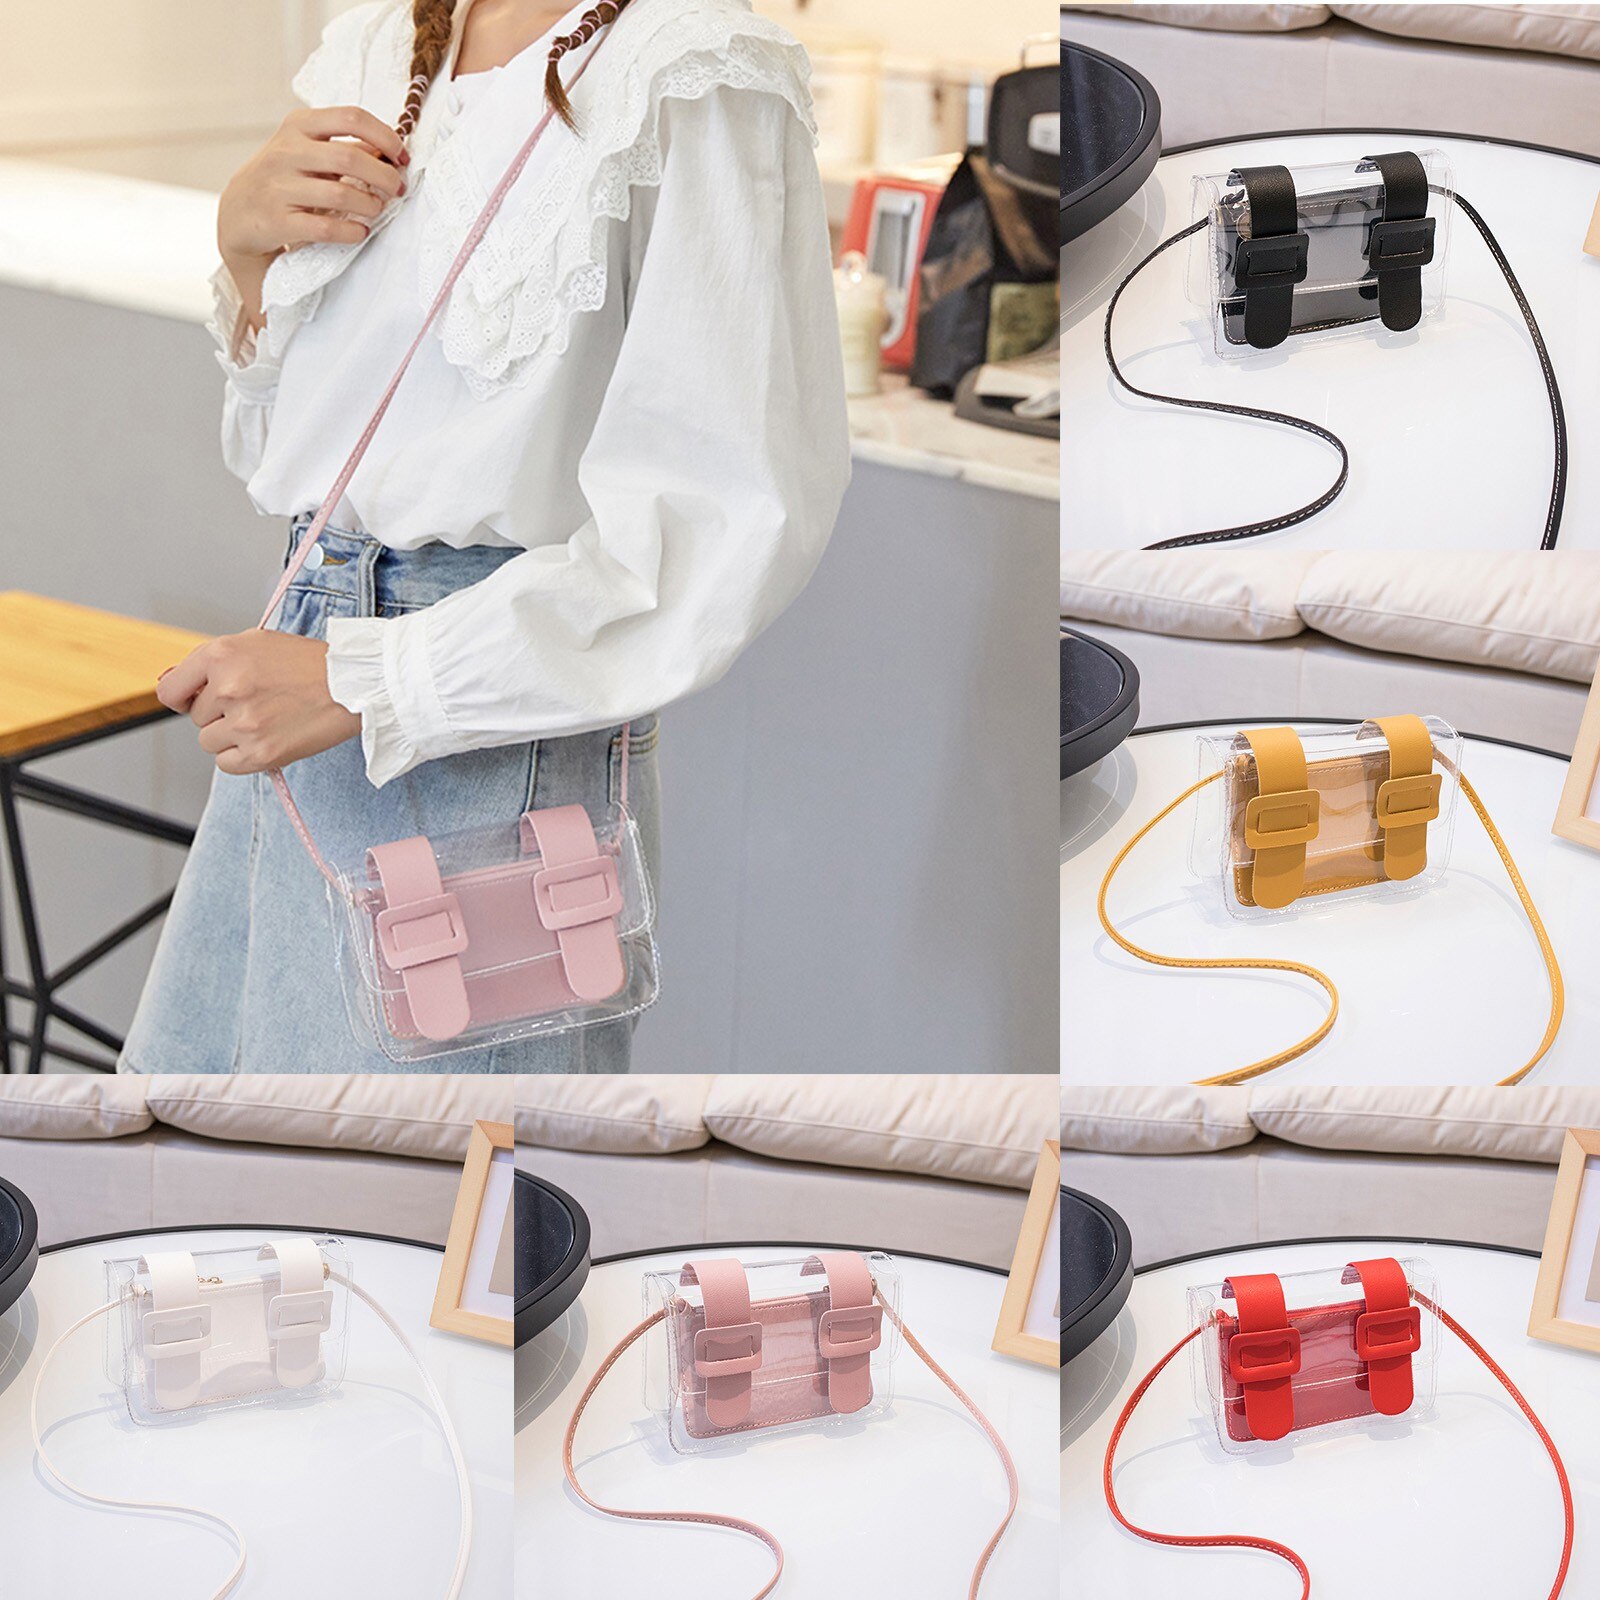 Mode Dames Transparante Jelly Kleine Tas Vrouwen Cross-Body Bag Schouder Messenger Bags Travel Handtas Voor Vrouwen # y30